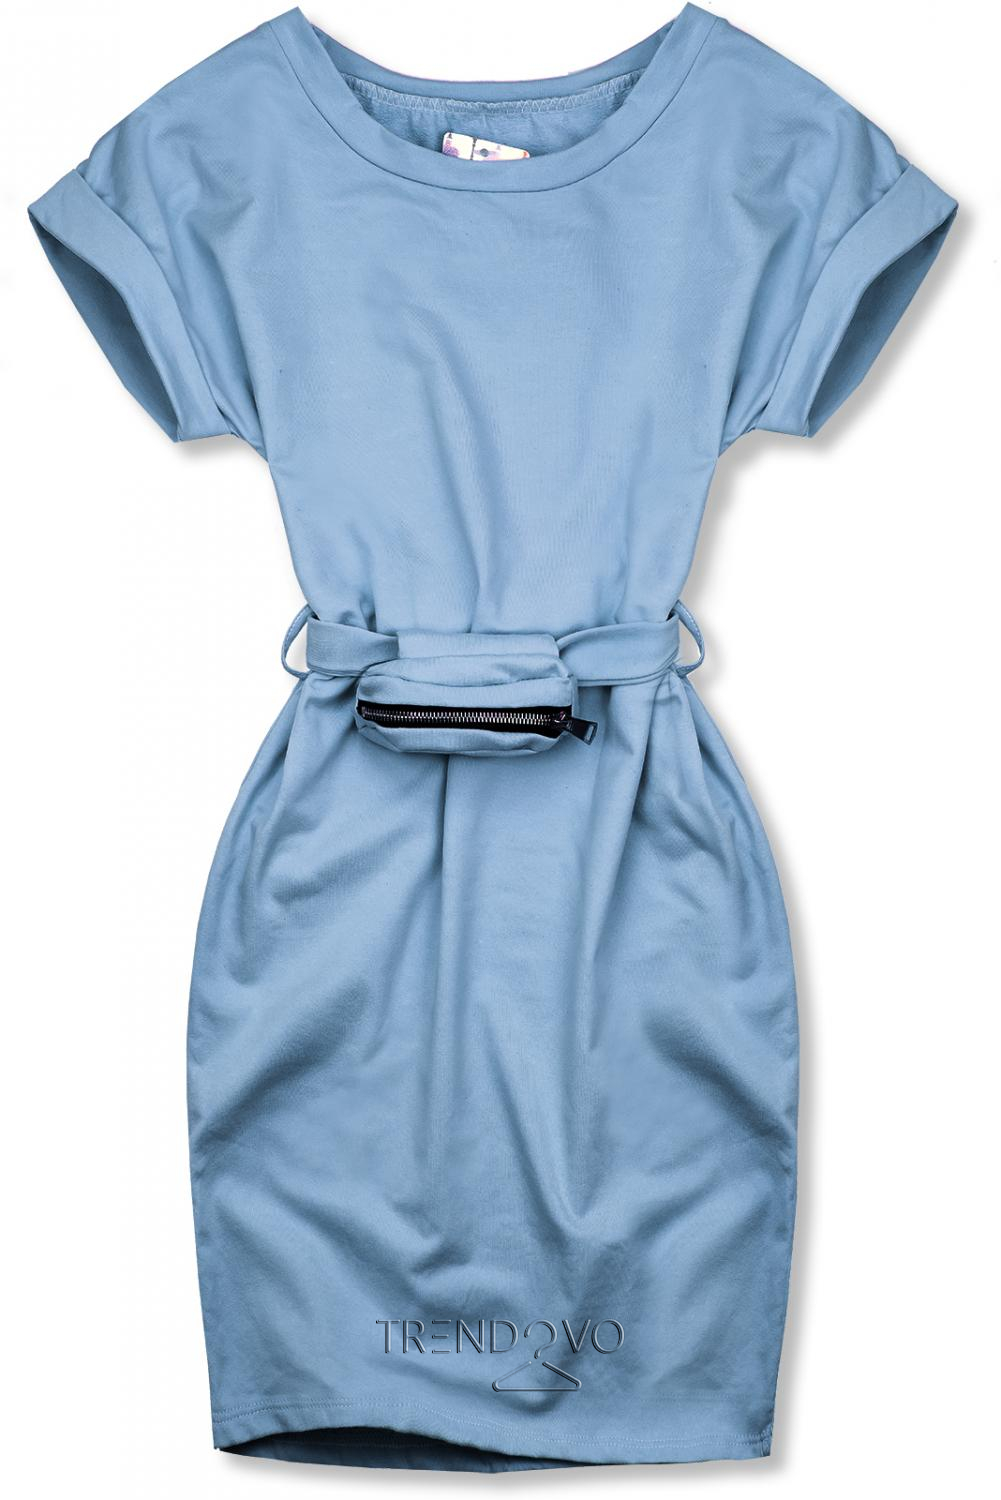 Baby blue basic šaty s malou taškou v páse